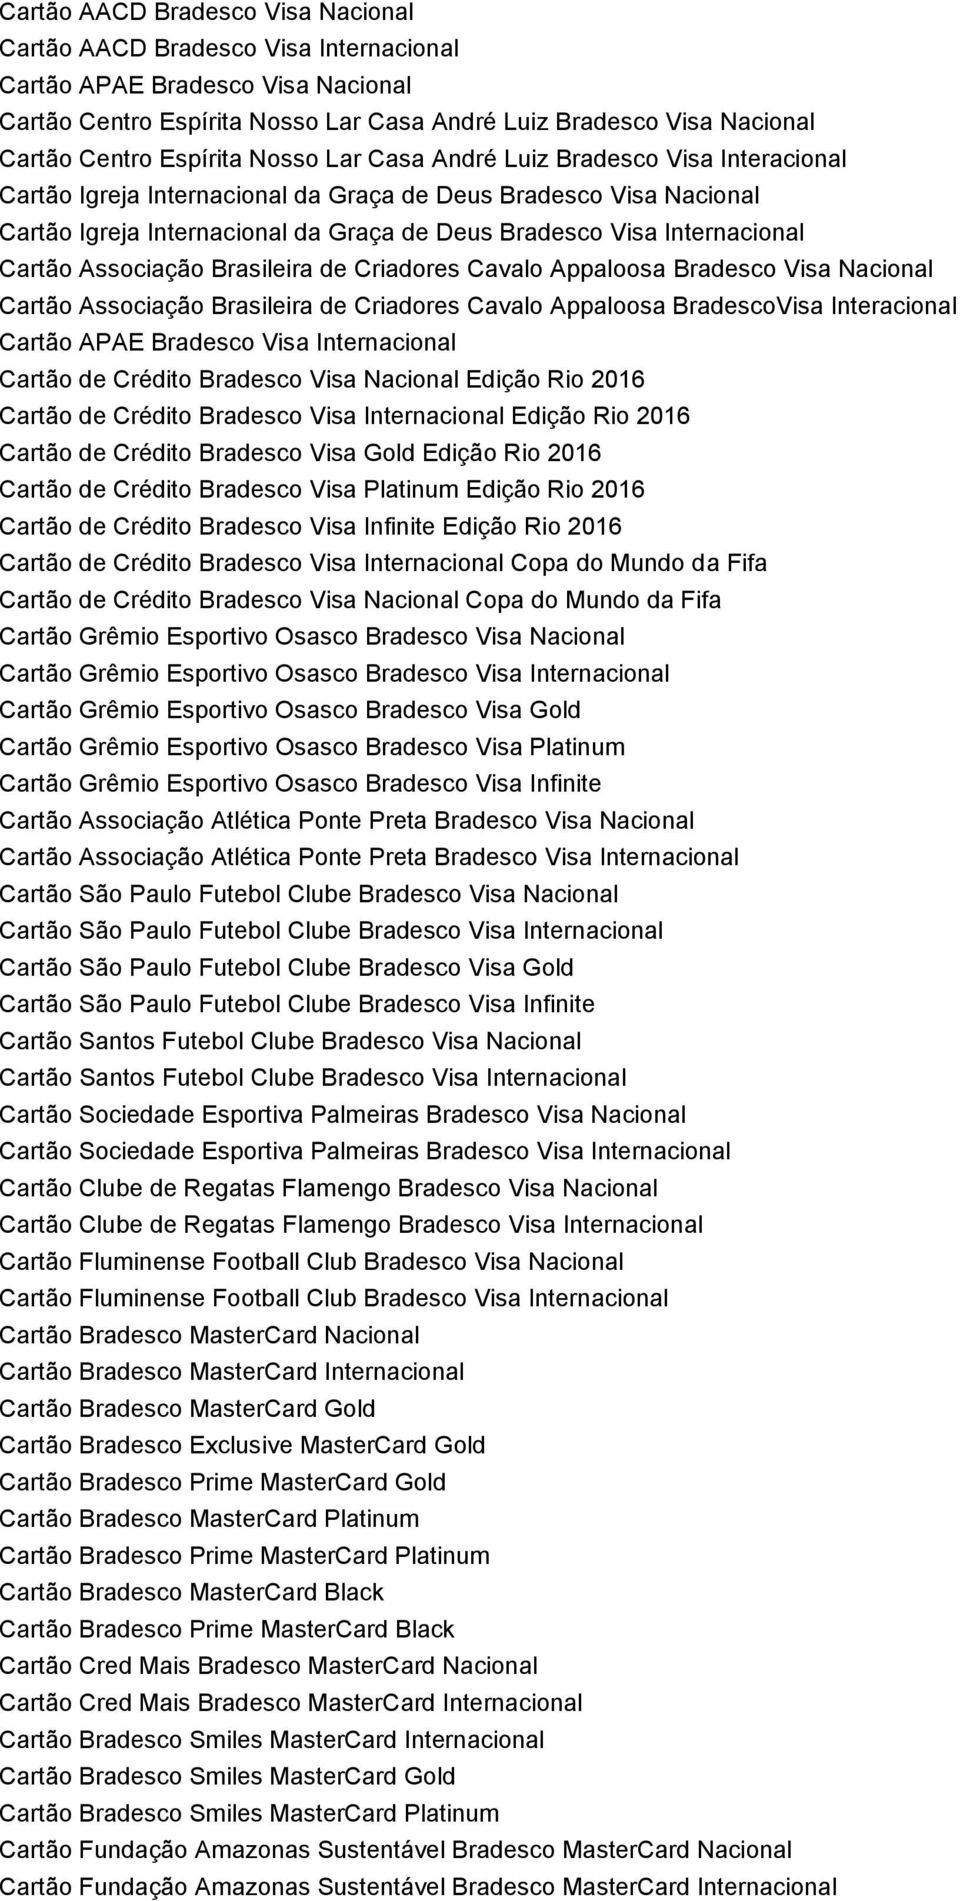 Internacional Cartão Associação Brasileira de Criadores Cavalo Appaloosa Bradesco Visa Nacional Cartão Associação Brasileira de Criadores Cavalo Appaloosa BradescoVisa Interacional Cartão APAE